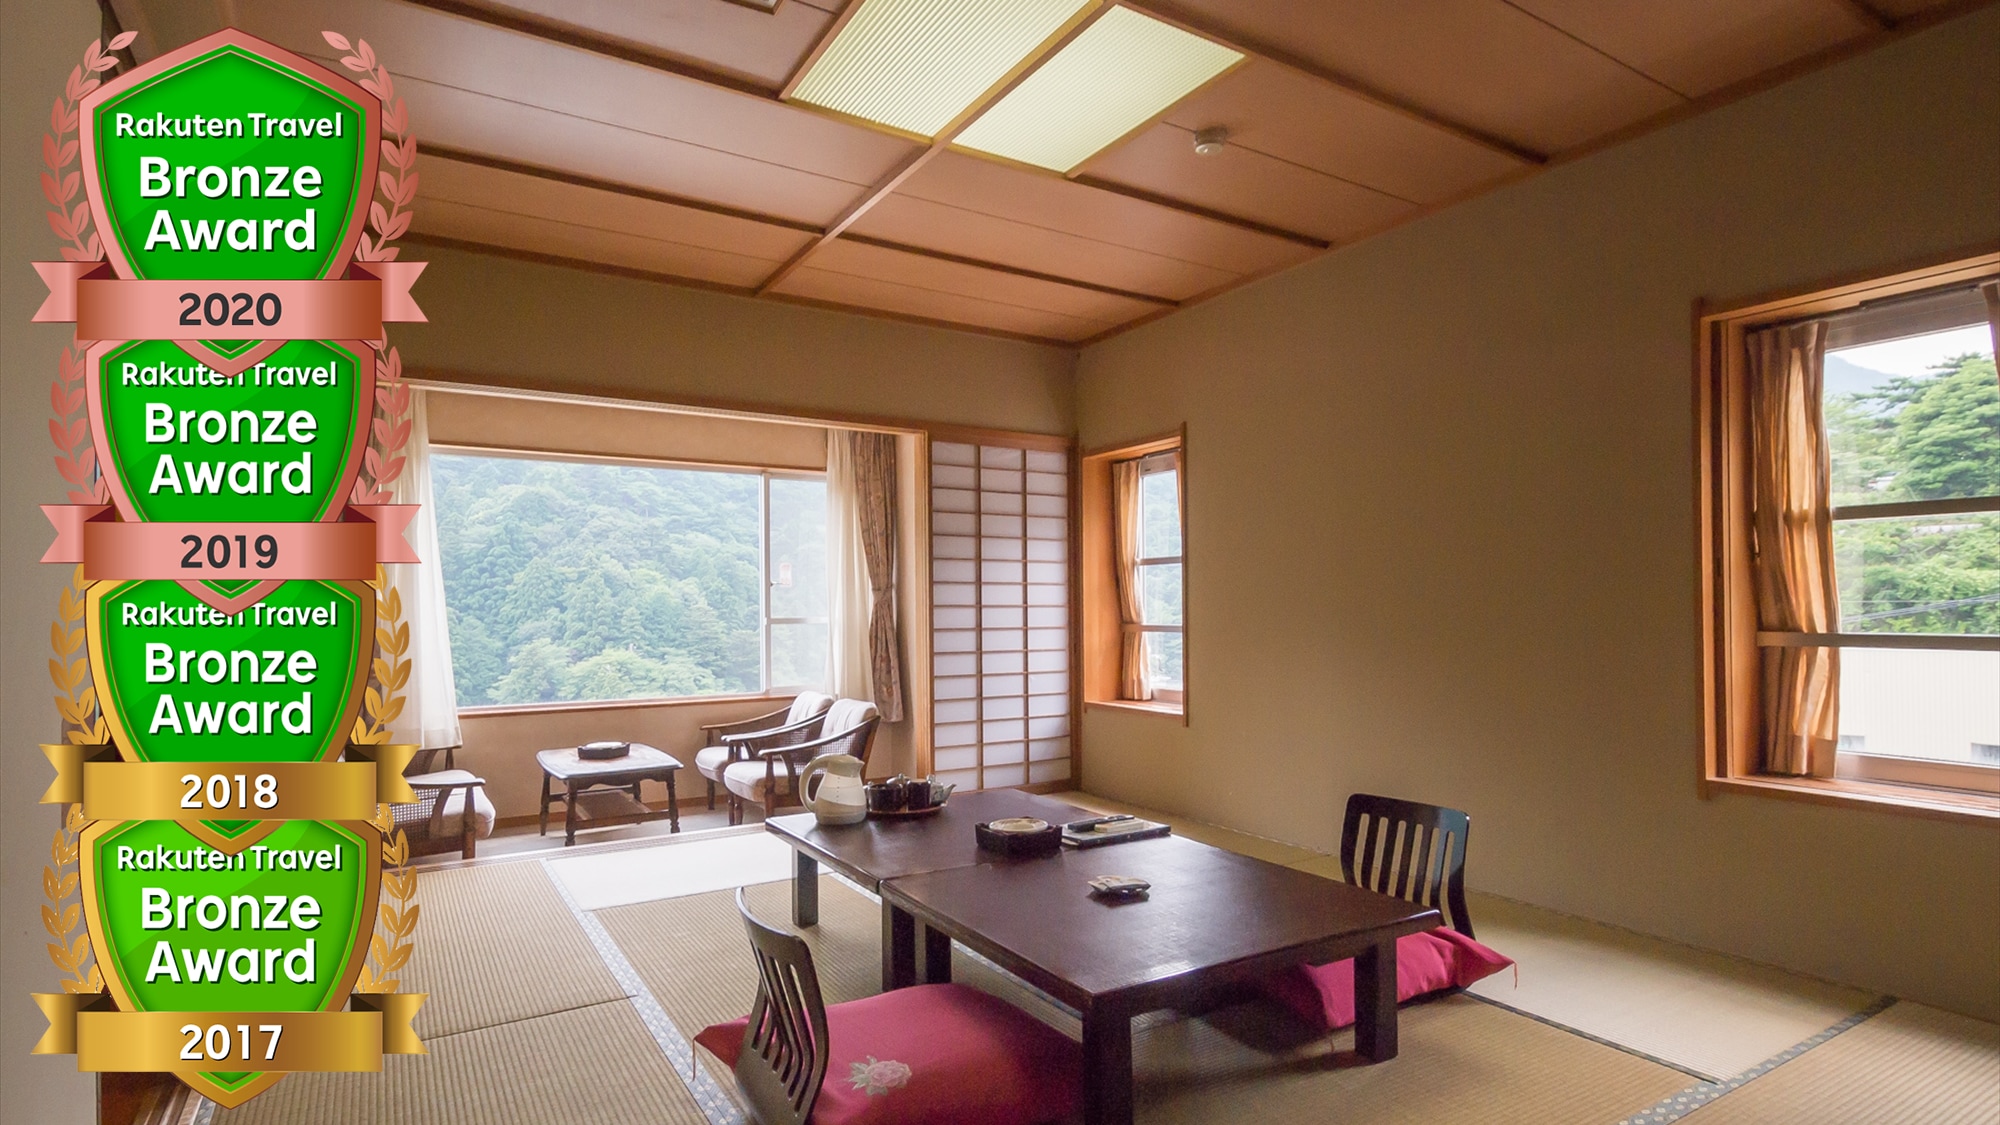 [Aya Mukai] An example of a guest room